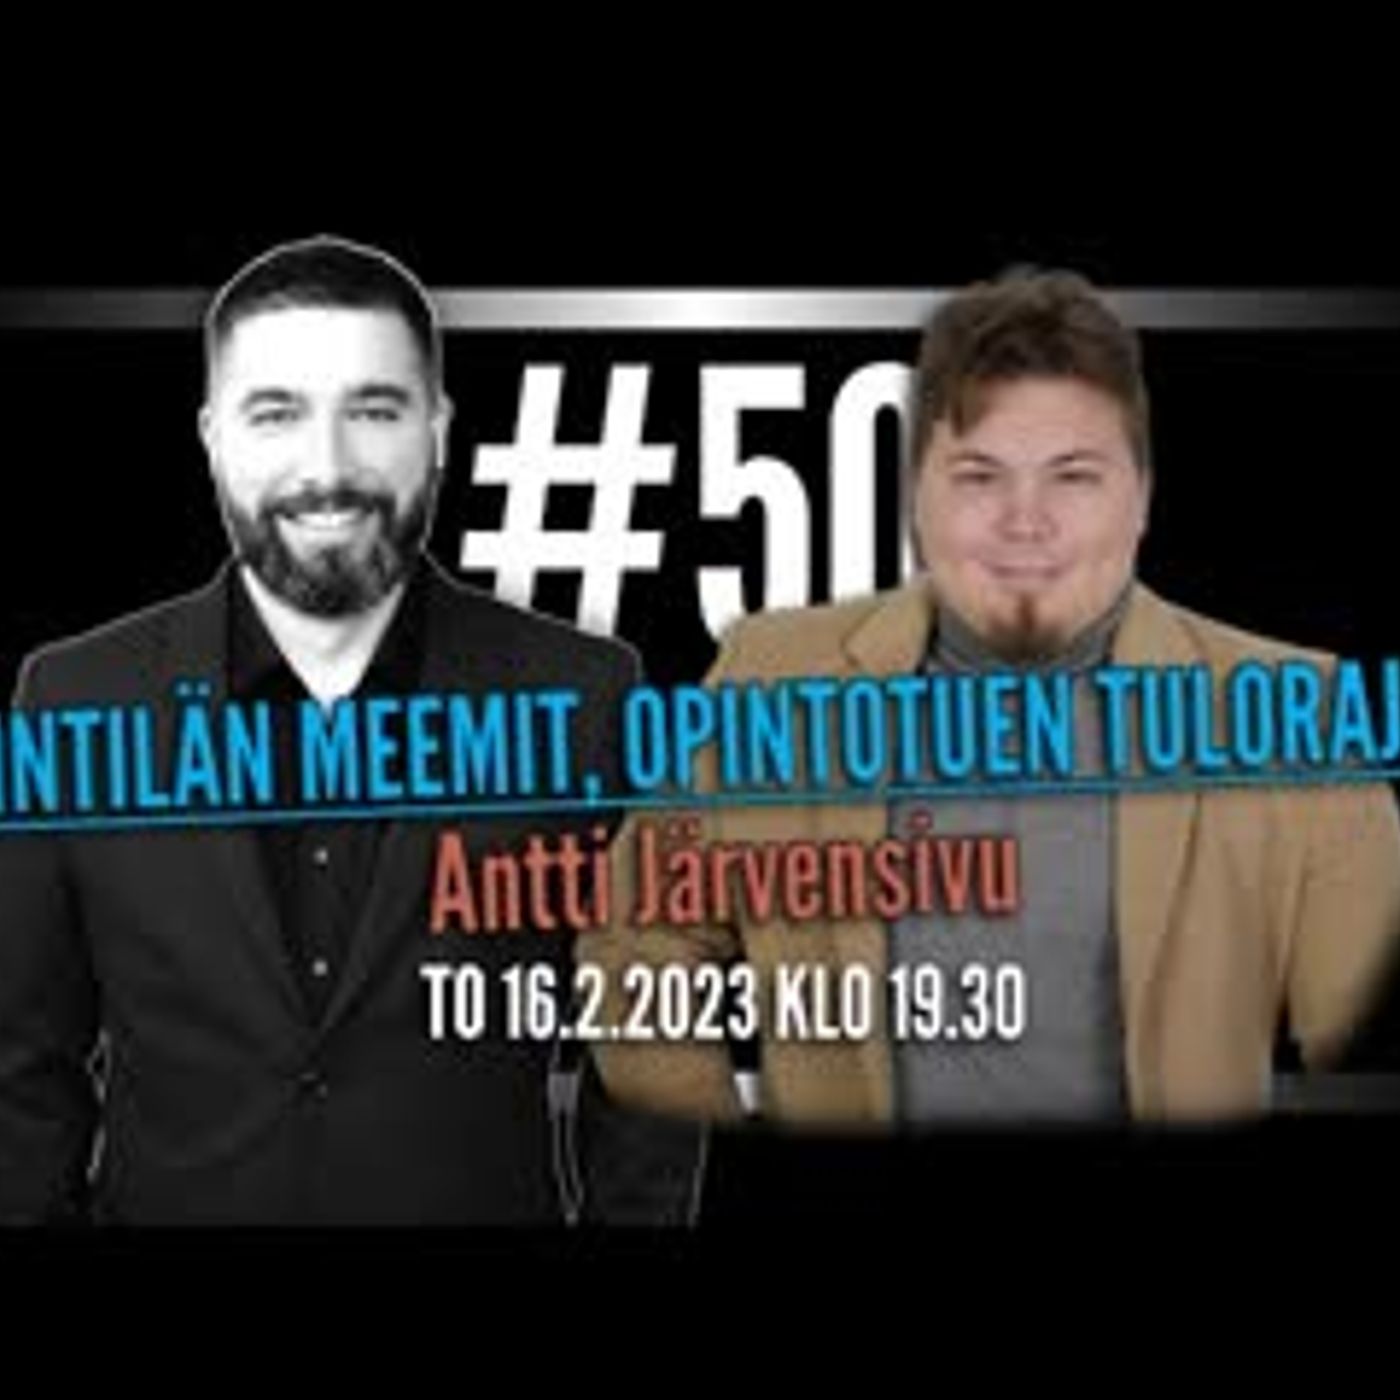 #50 - Gallupit, Lintilä, nuuska, opintotuen tulorajat + Antti Järvensivu (Pirkanmaa)